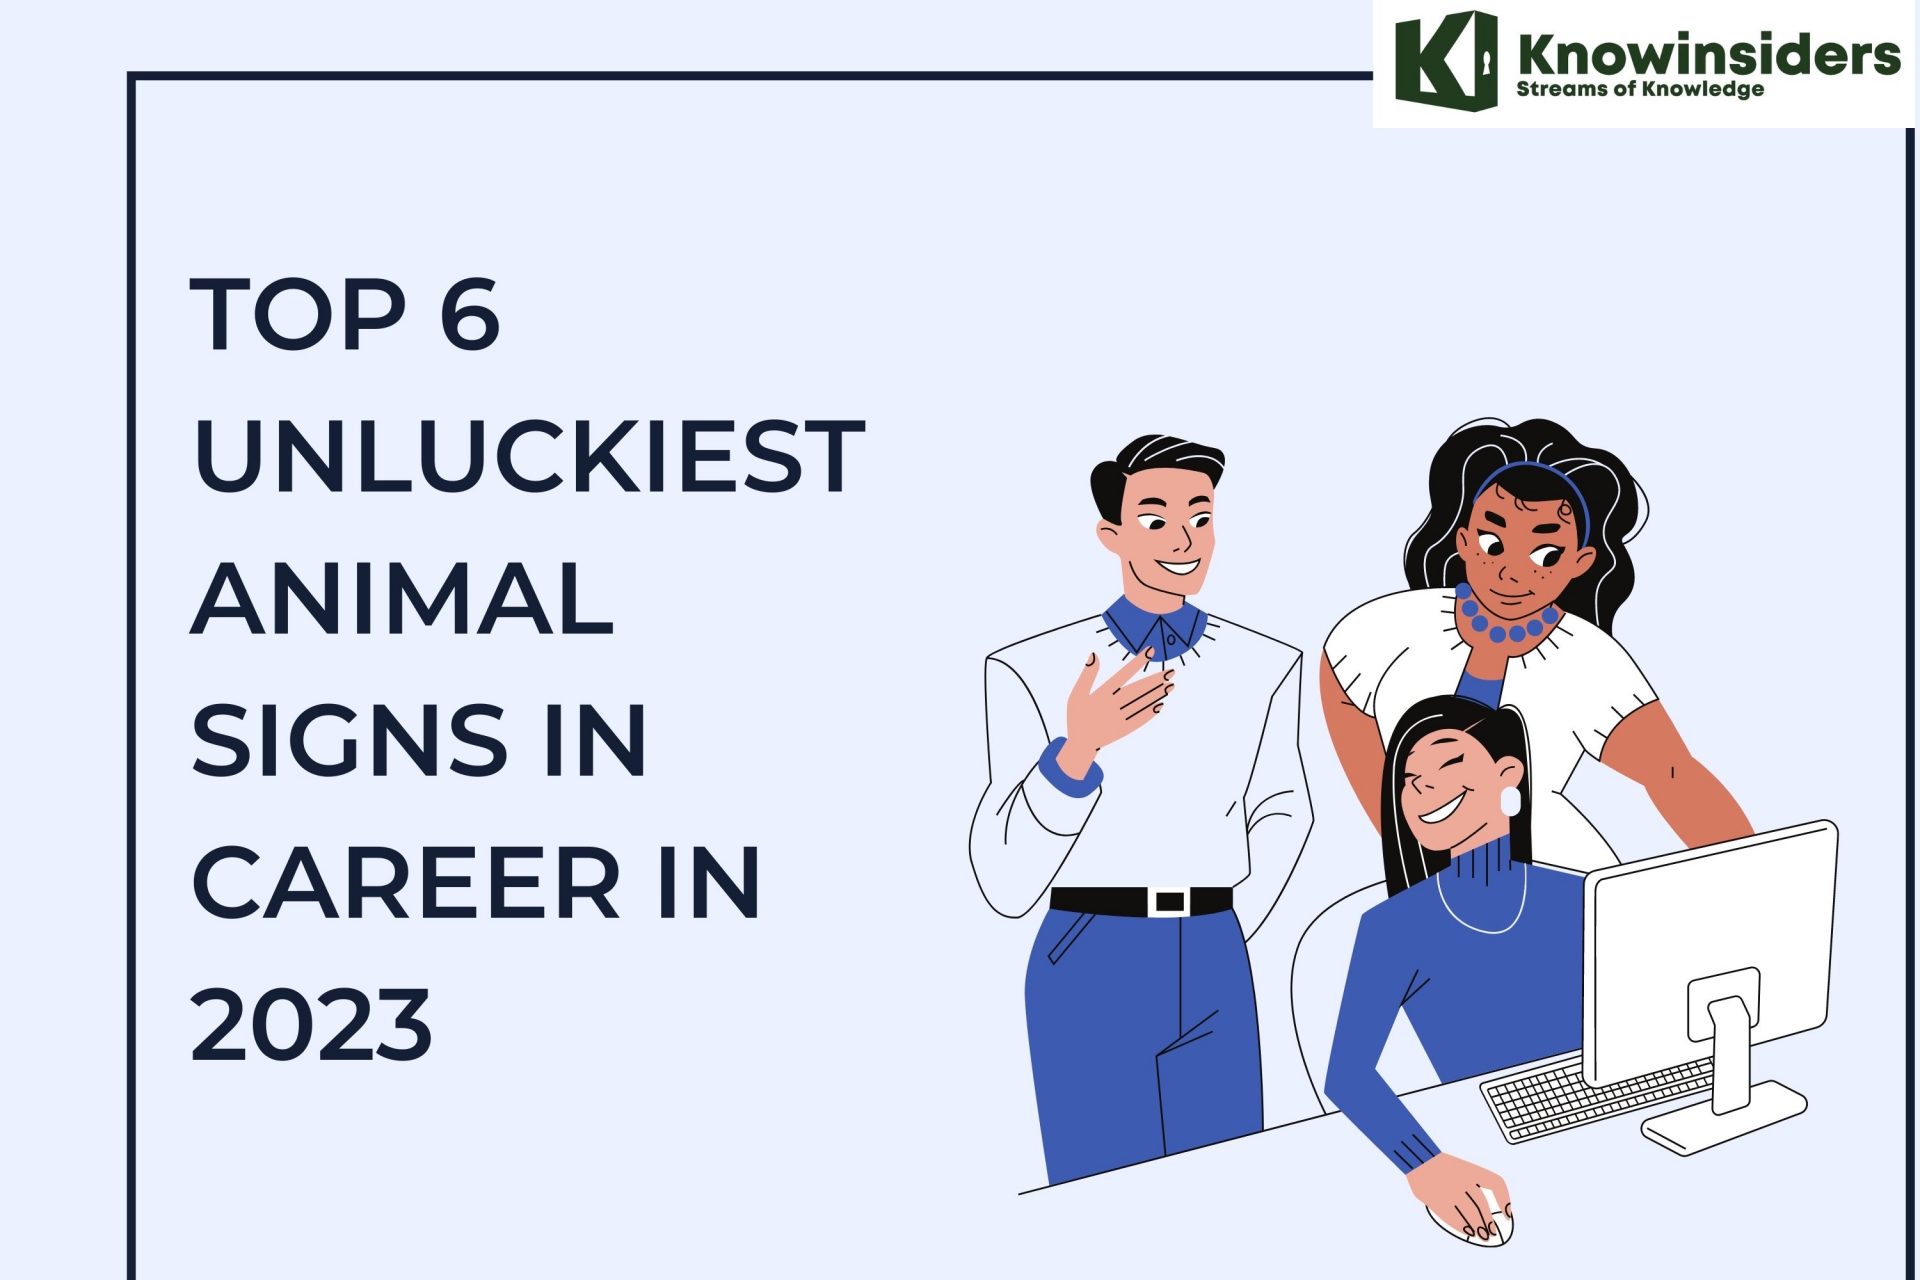 Top 6 Unluckiest Animal Signs in Career in 2023